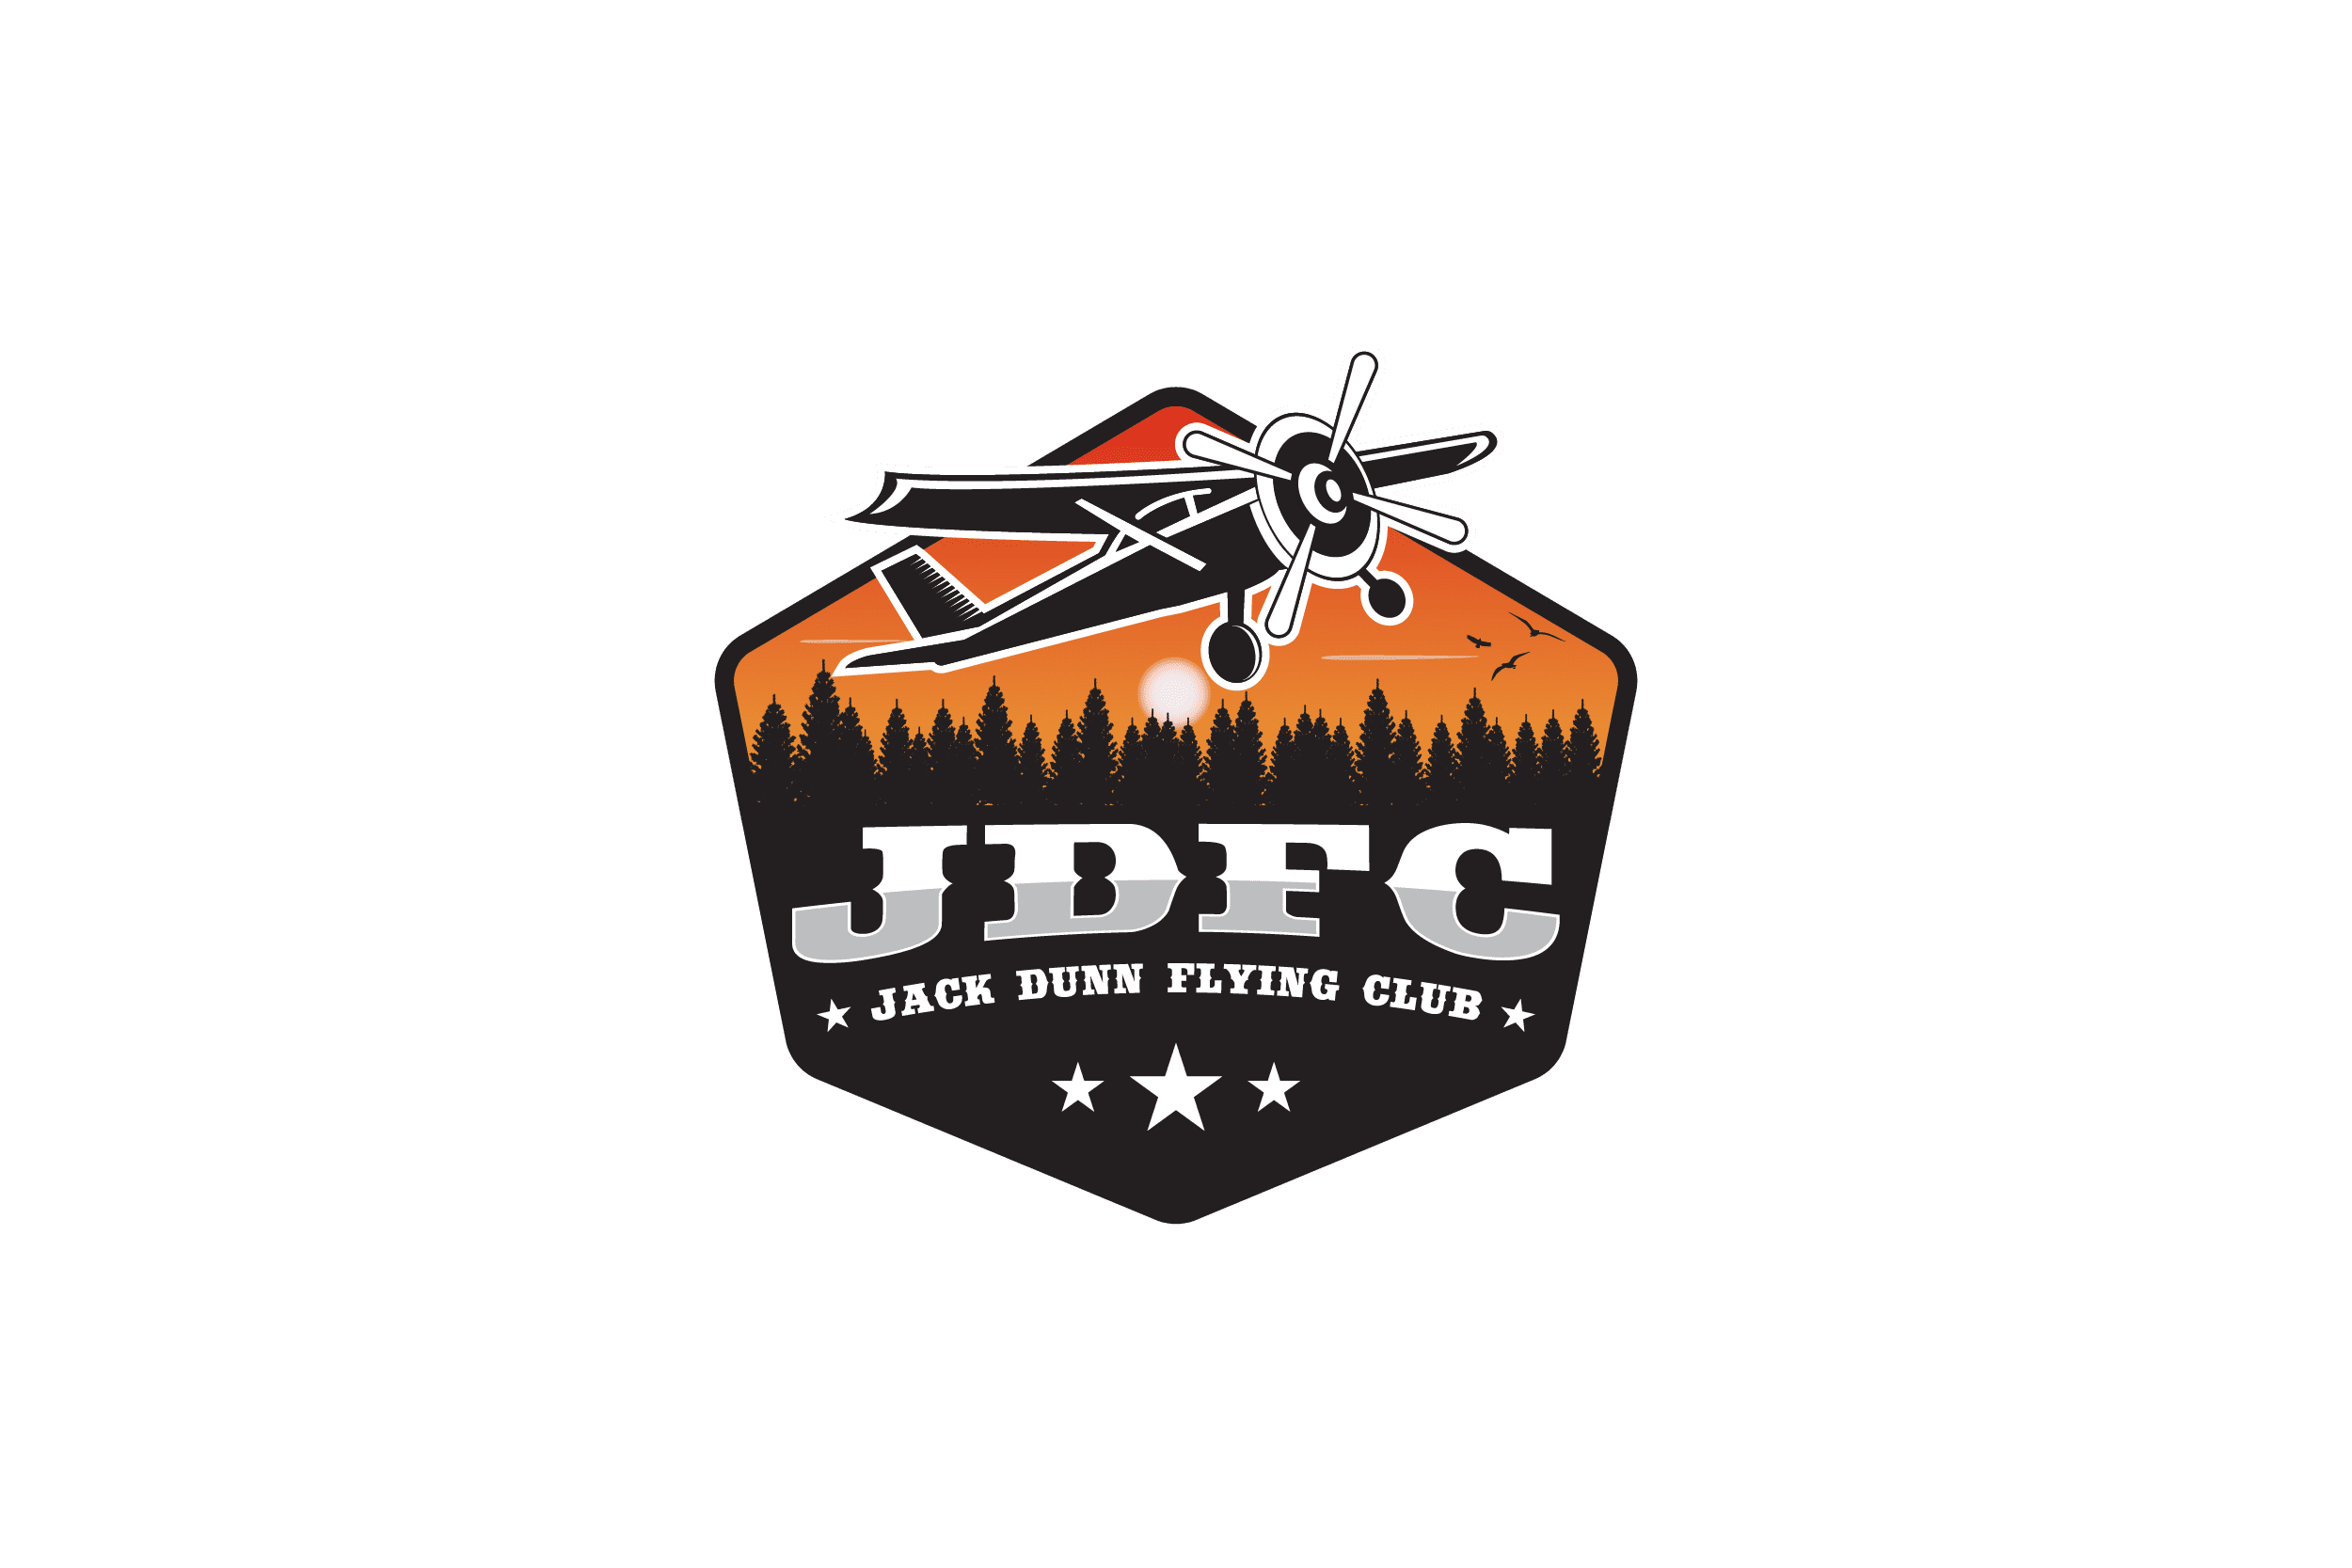 Jack Dunn Flying Club